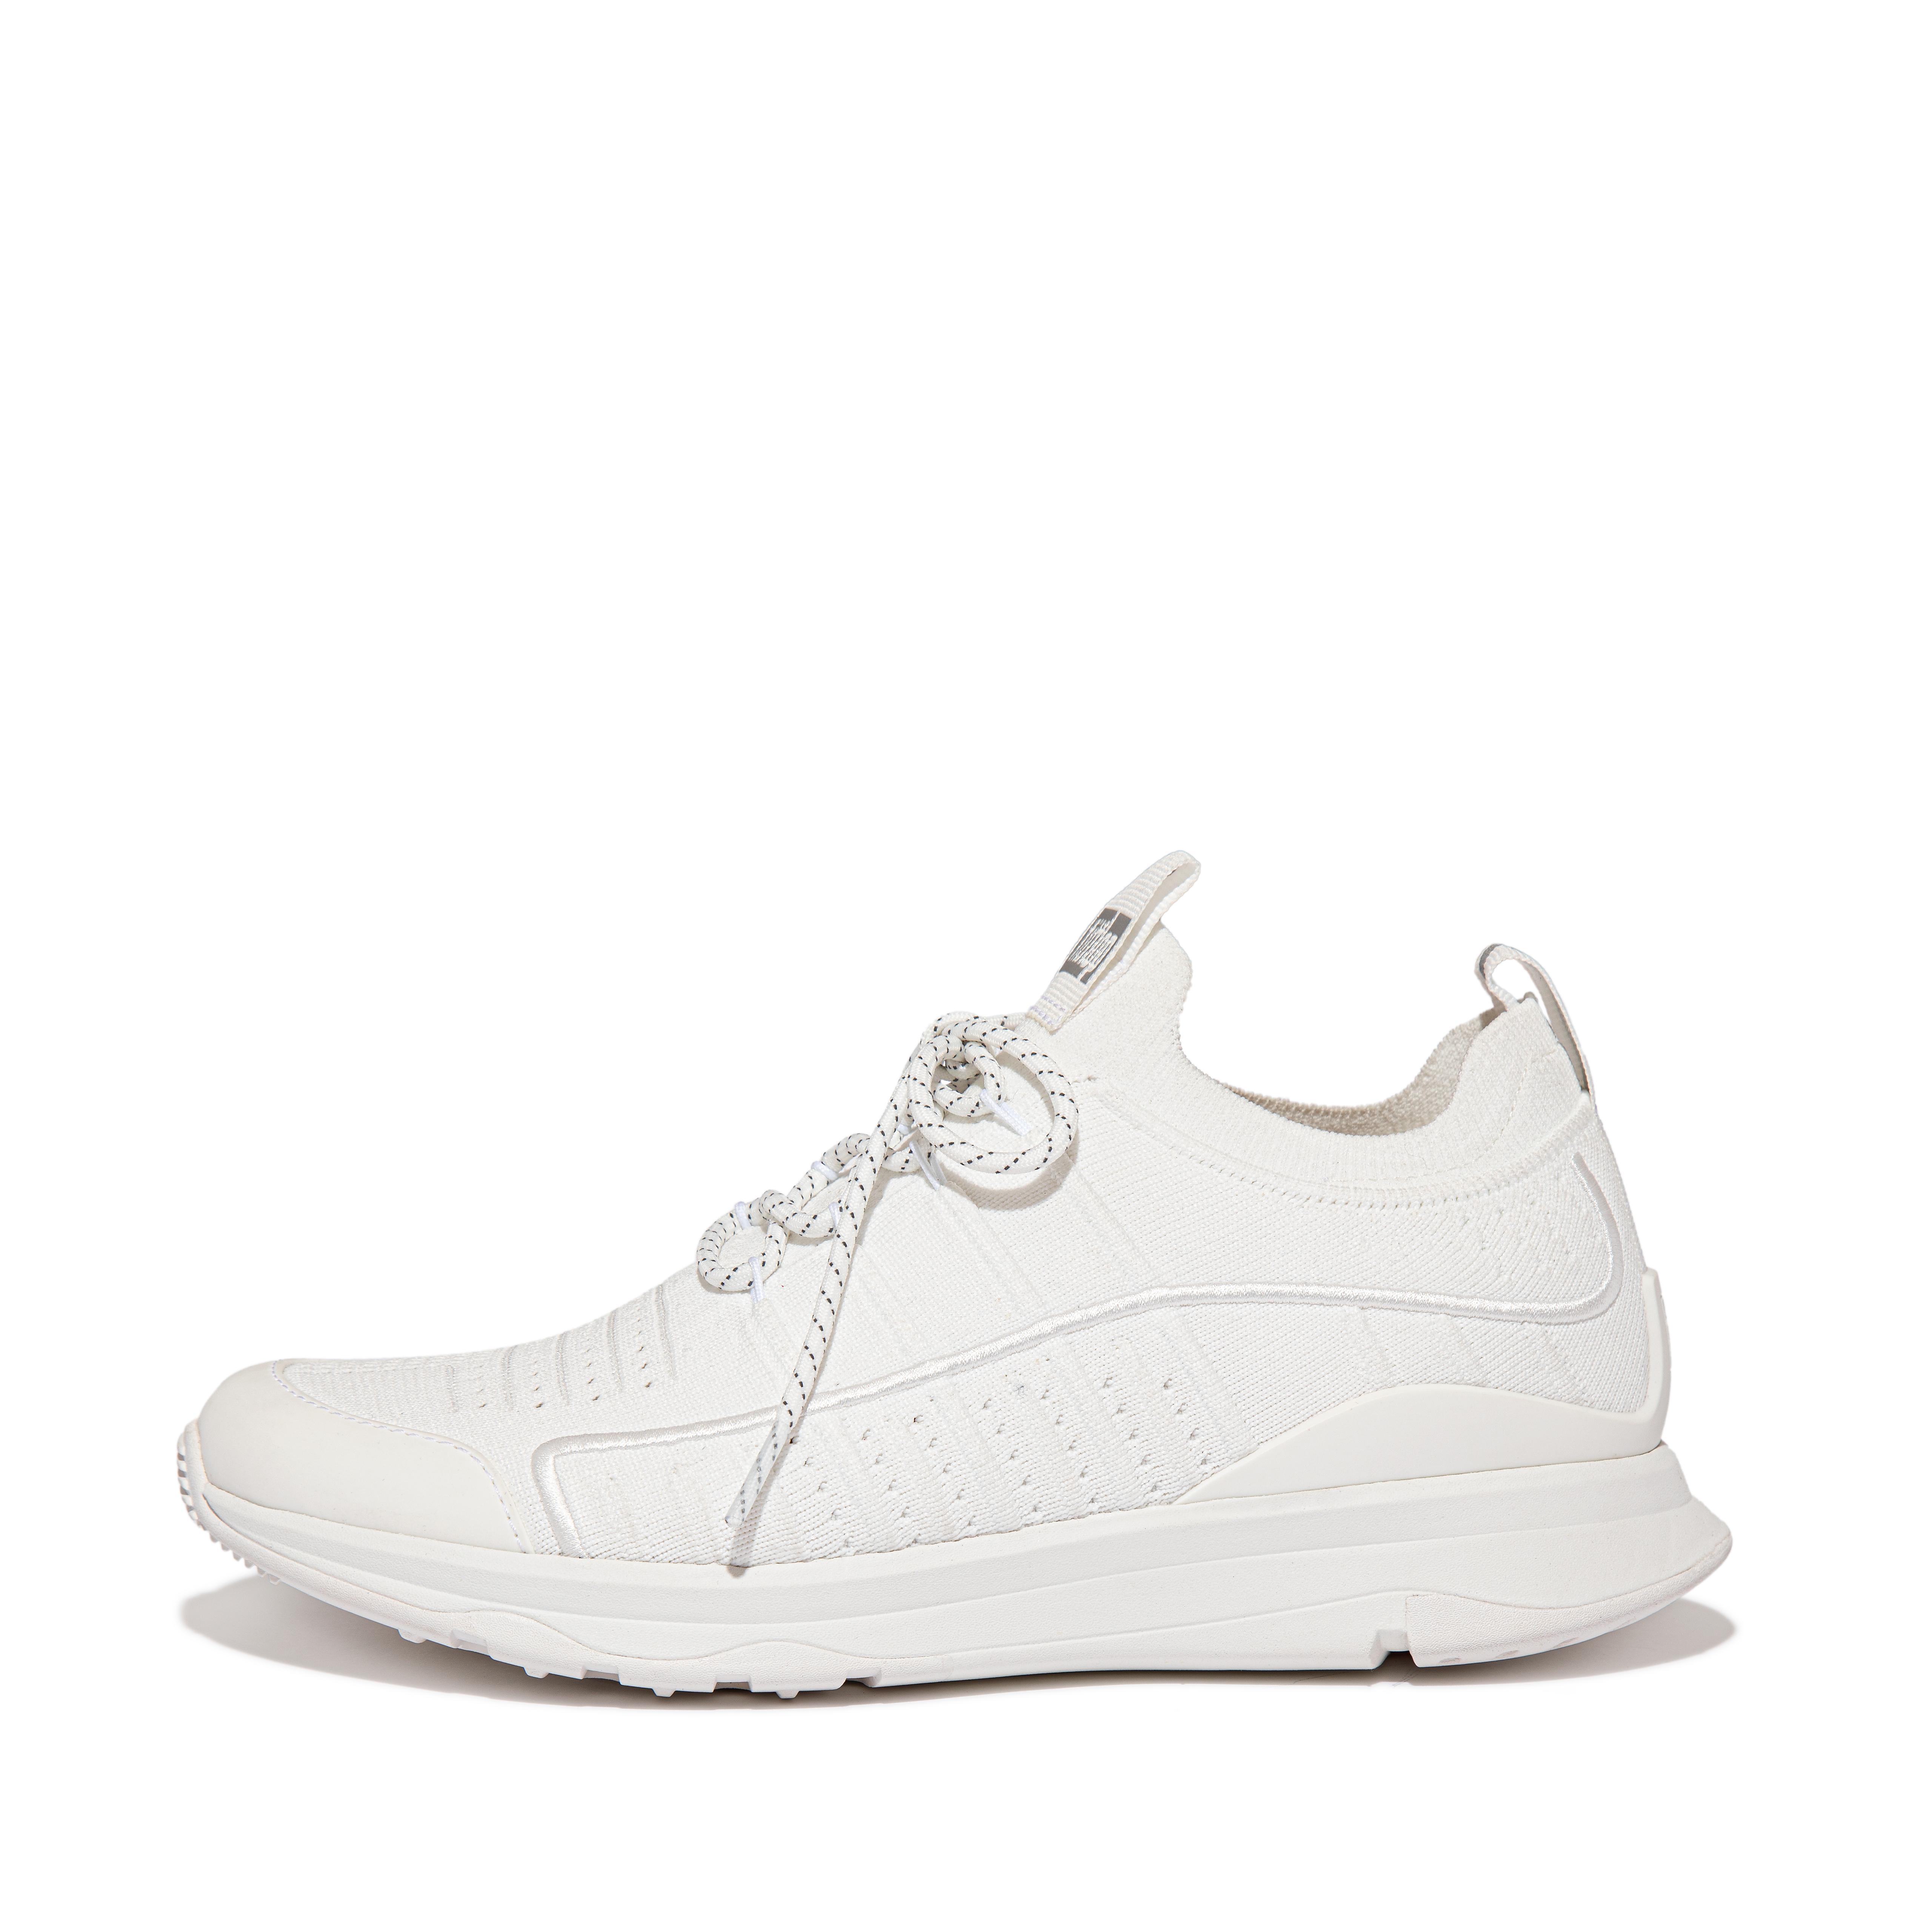 핏플랍 스니커즈 FitFlop VITAMIN FF Knit Sports Sneakers,Urban White